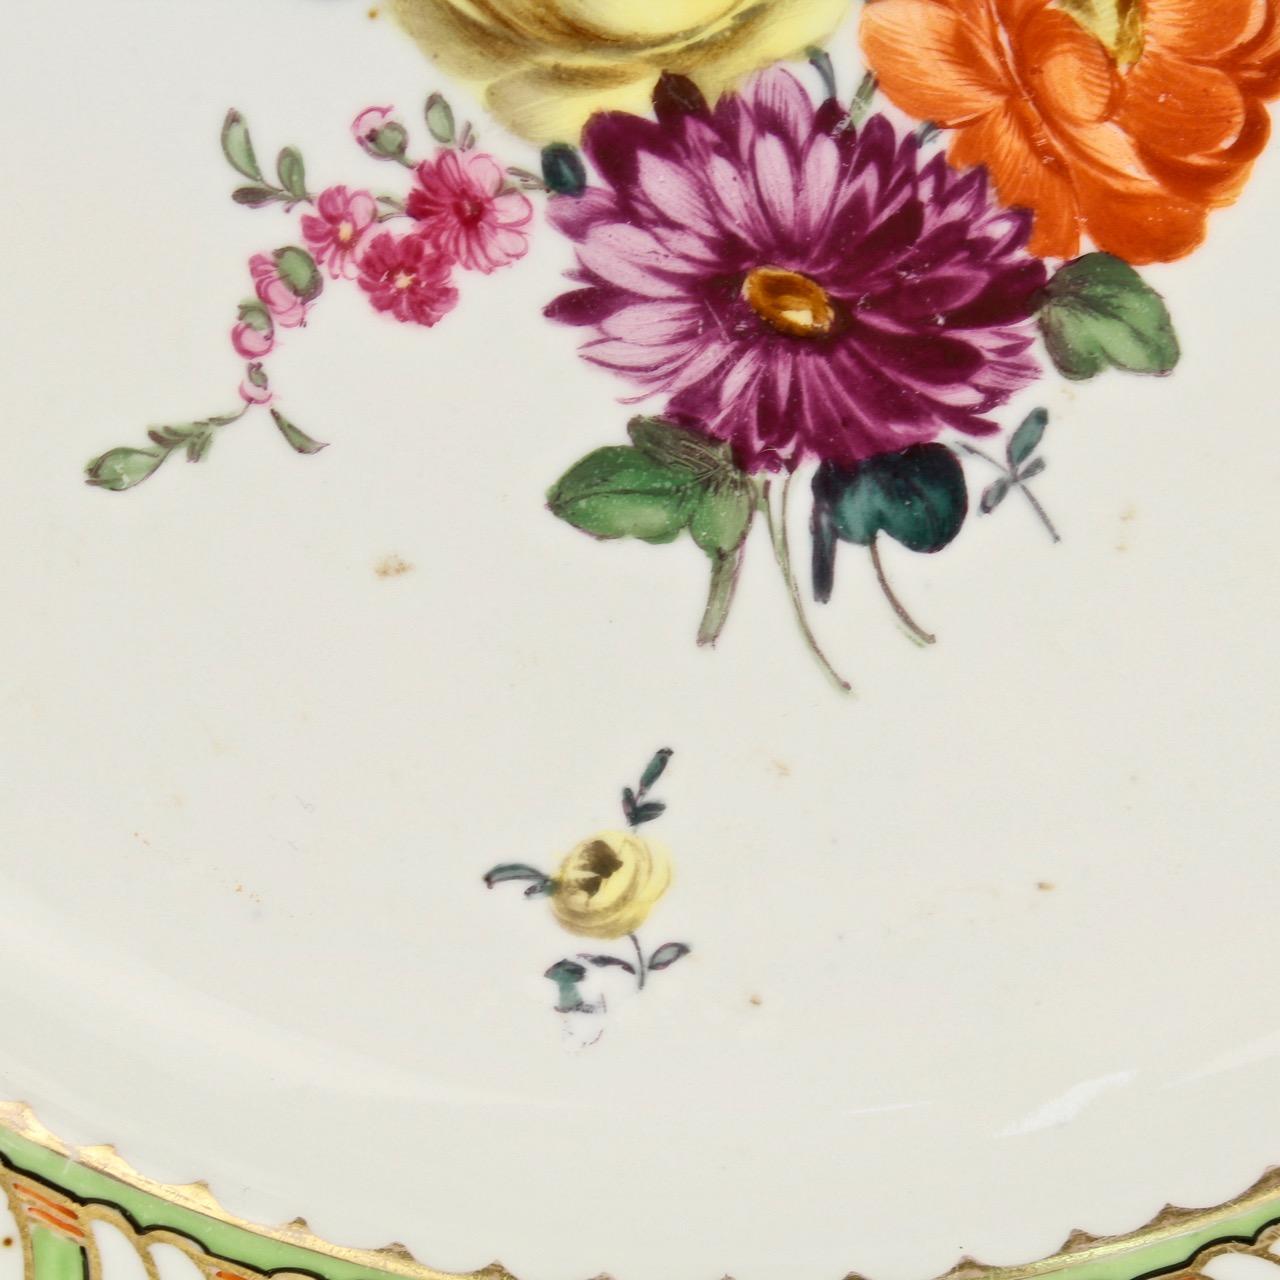 6 Antique Vienna Porcelain Plates with Green Borders & Deutsche Blumen Flowers 9